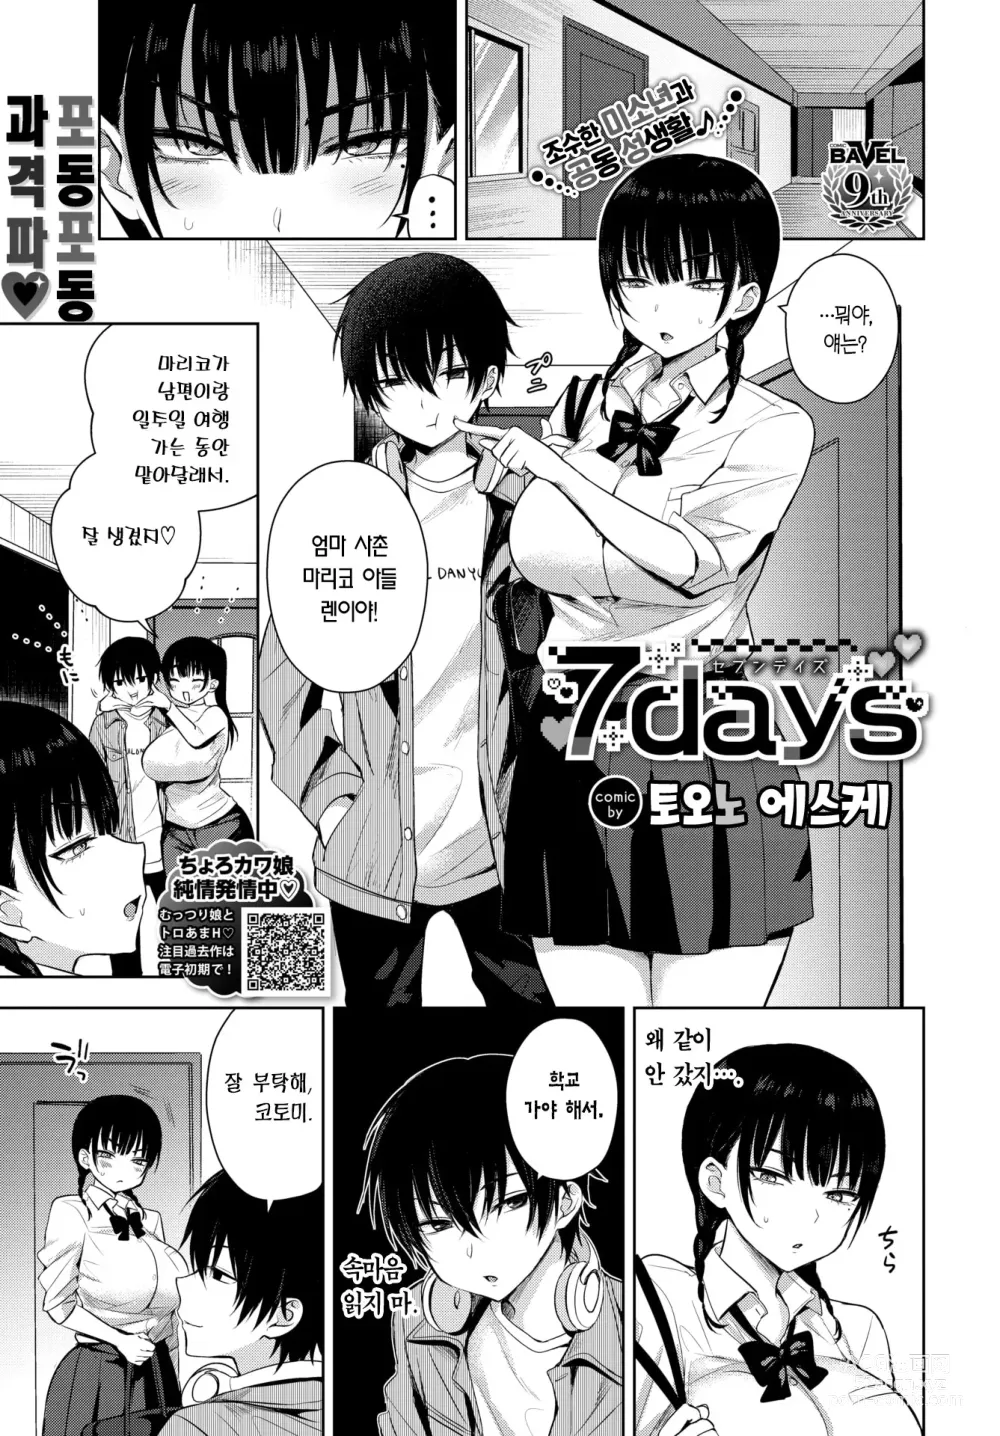 Page 2 of manga 7 Days